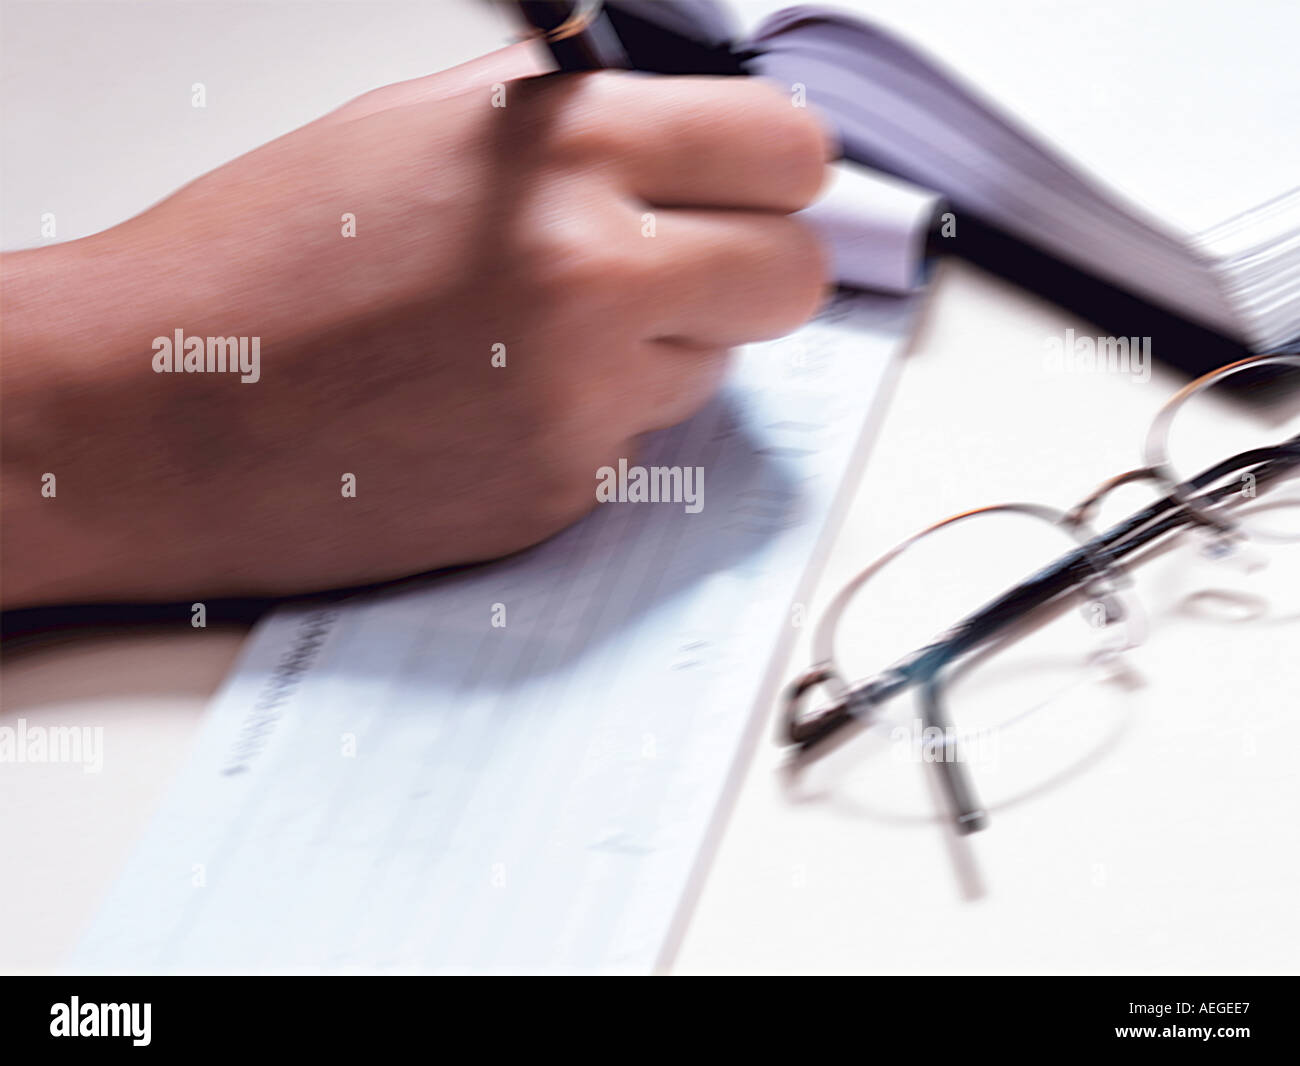 Office controllare il libretto degli assegni la compilazione di rendere la Scrittura ordine di pagamento occhiali occhiali calendario appuntamenti mano penna miscell sfocata Foto Stock